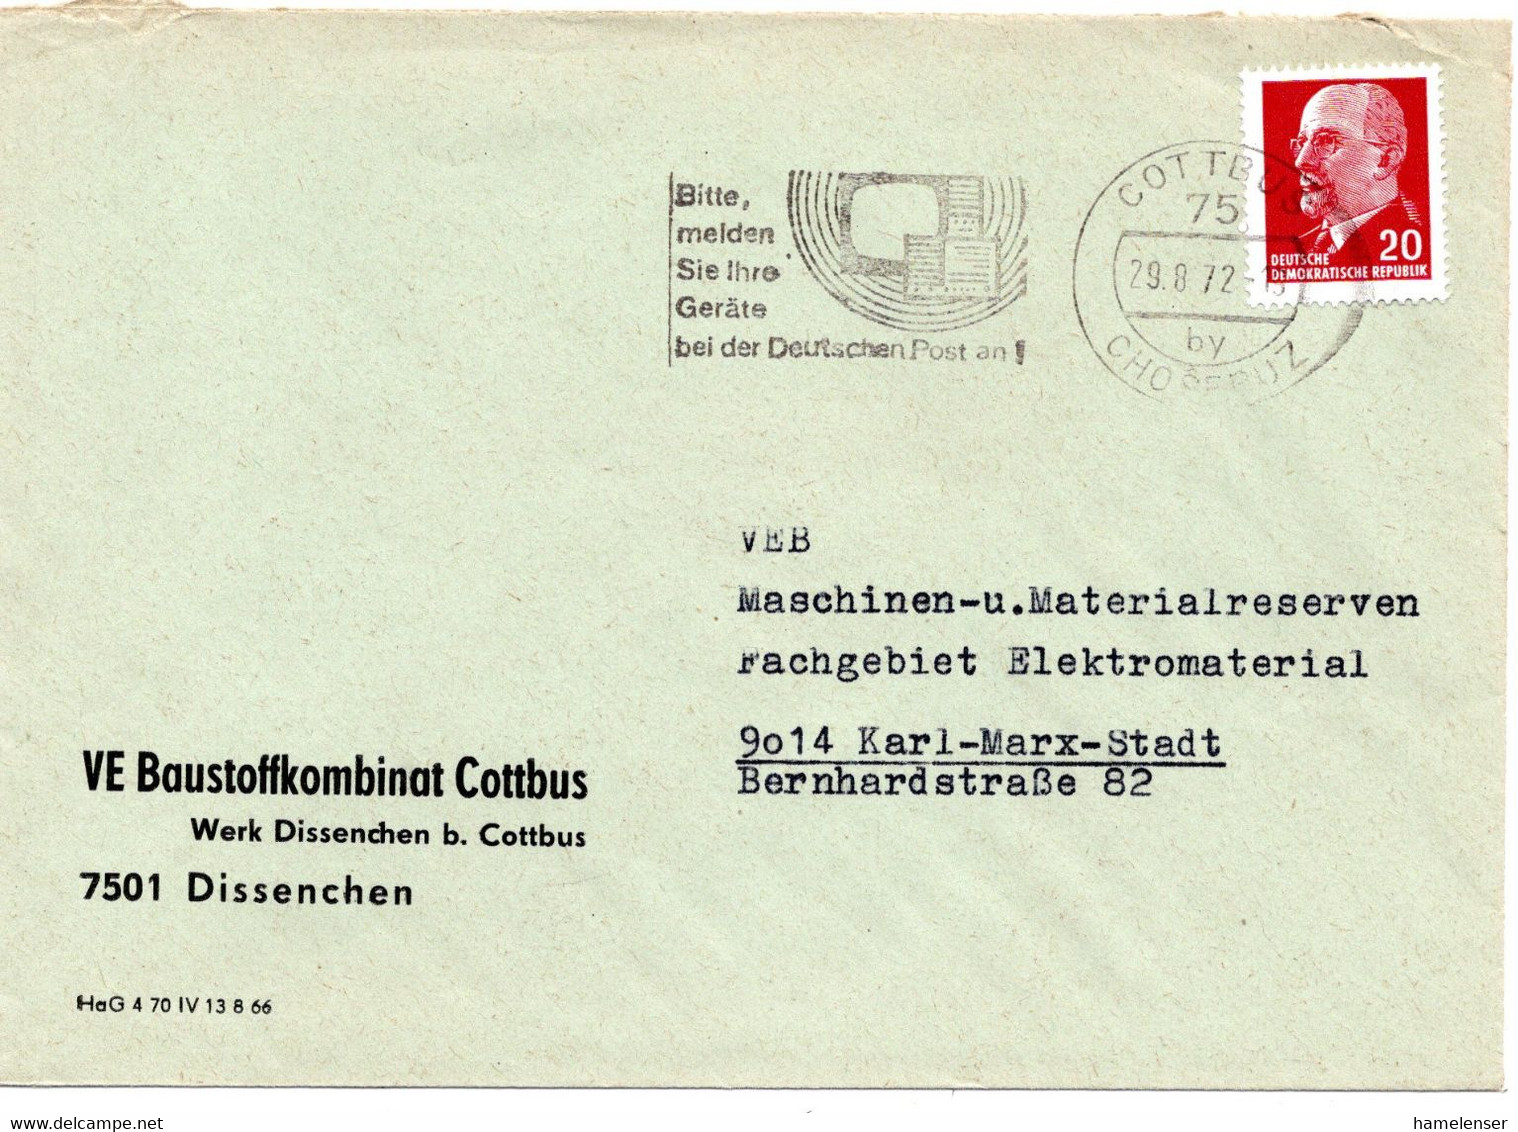 62760 - DDR - 1972 - 20Pfg Ulbricht EF A Bf COTTBUS - BITTE MELDEN SIE IHRE GERAETE ... -> Karl-Marx-Stadt - Covers & Documents